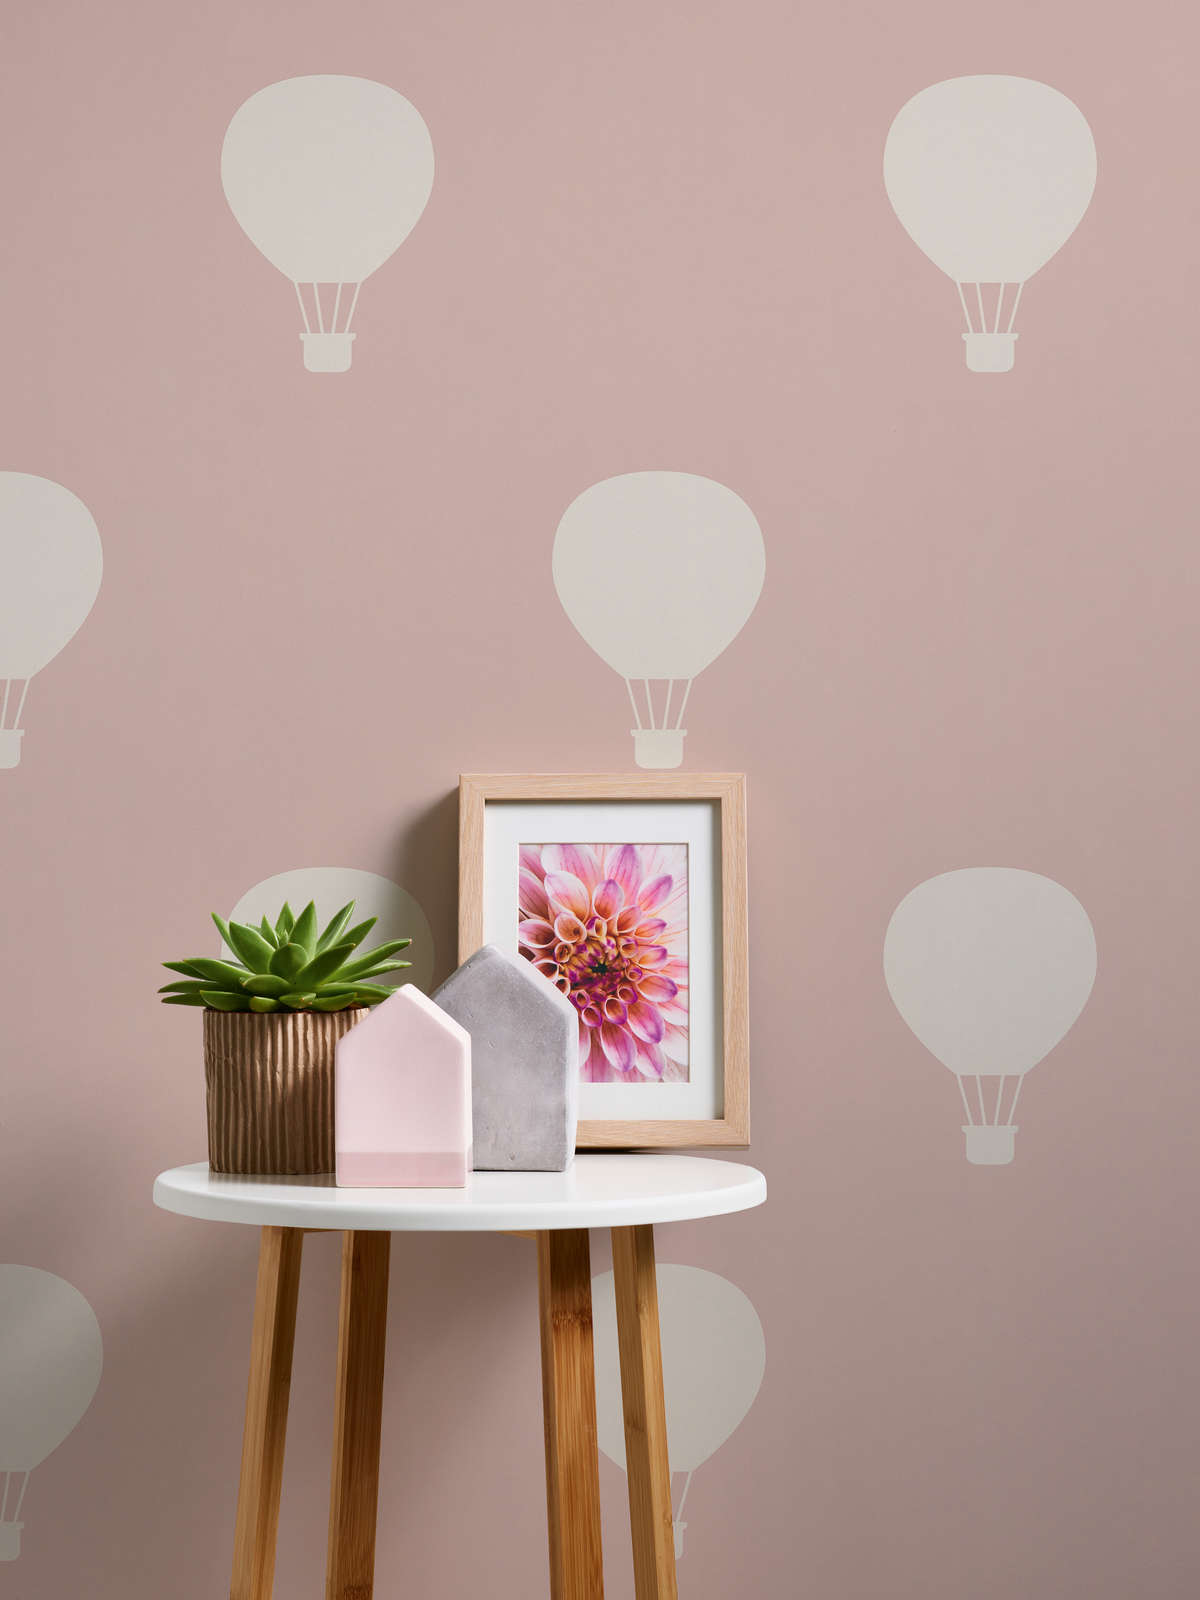             Papel pintado para habitaciones infantiles con motivo de globos aerostáticos - crema, rosa
        